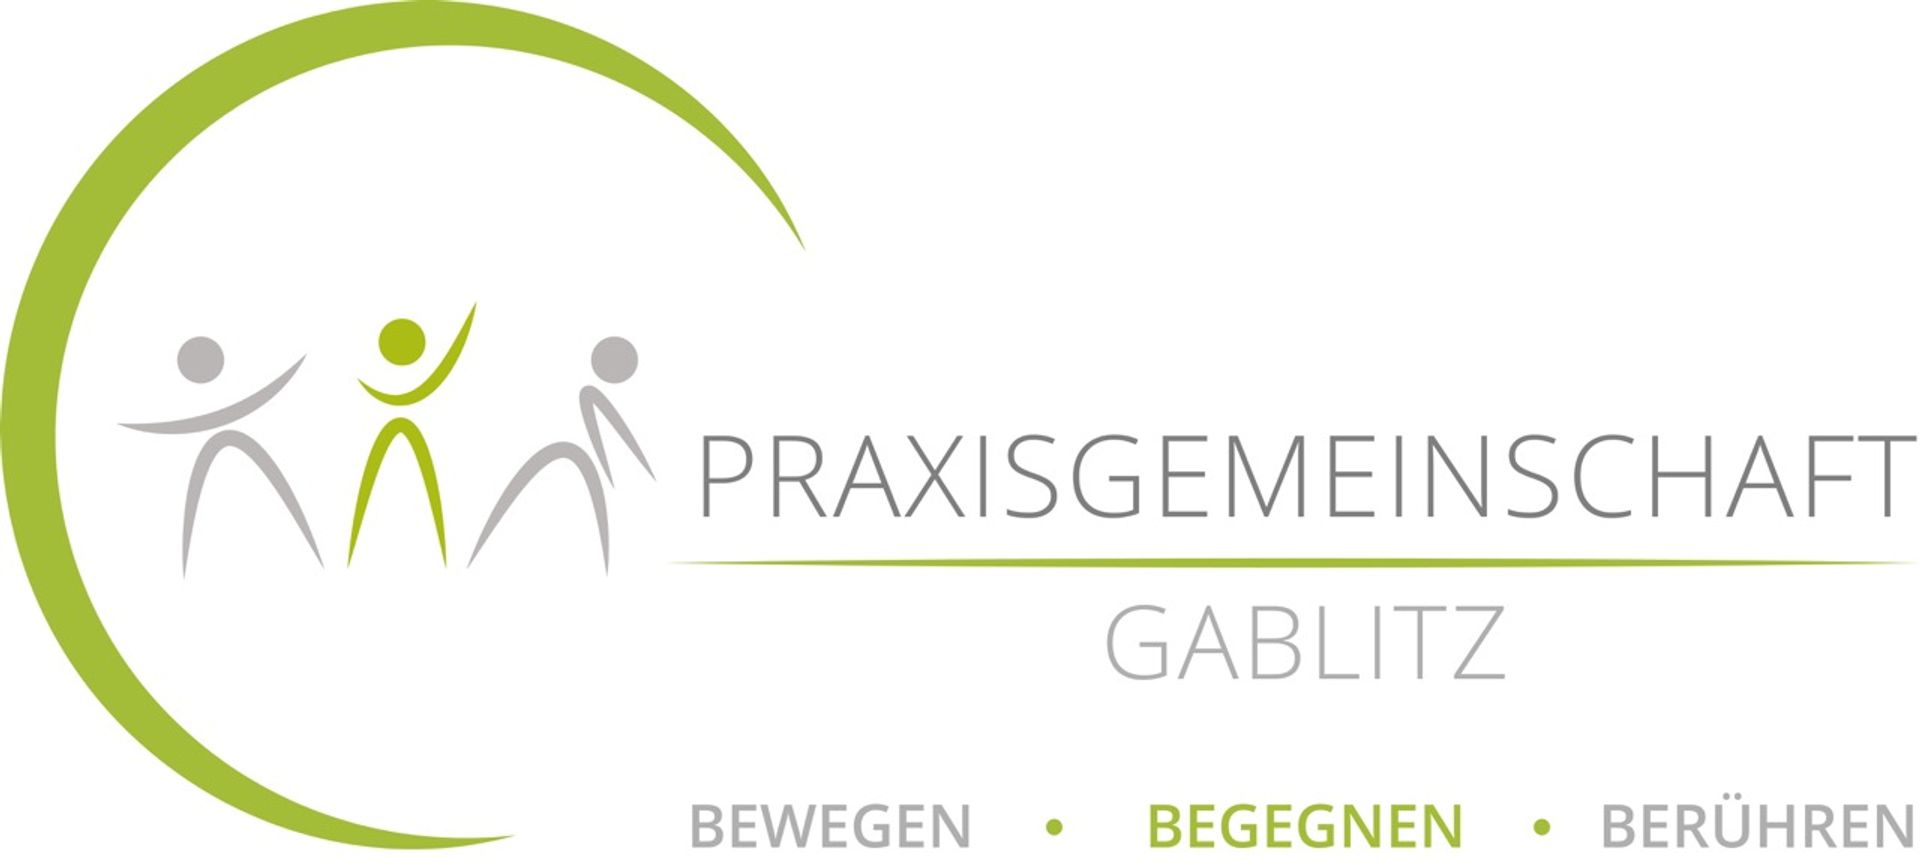 praxisgemeinschaft gablitz logo